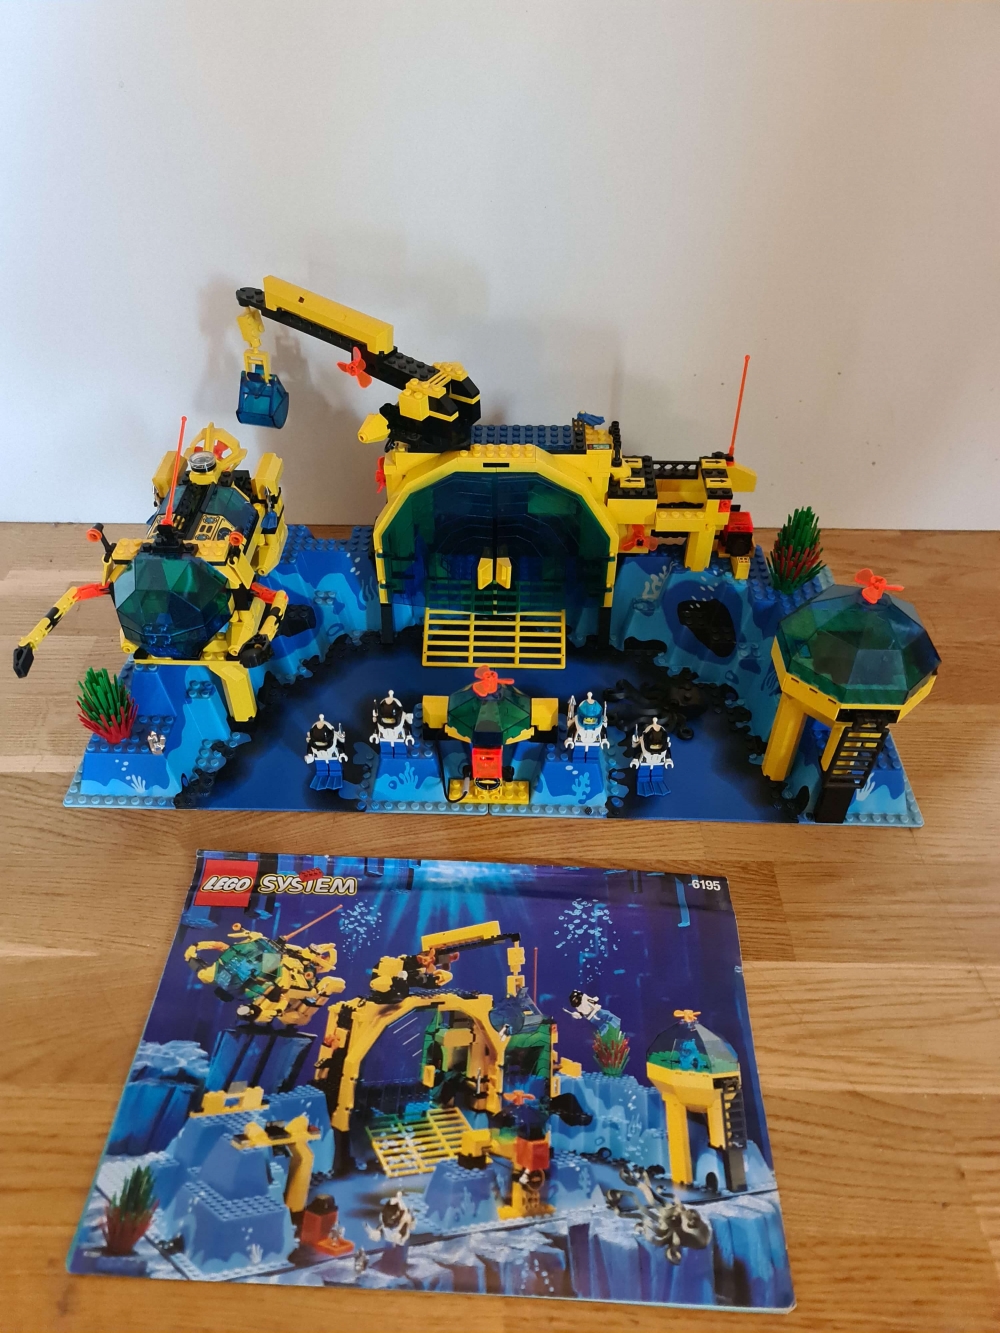 Sett 6195 fra Lego Aquazone : Aquanauts serien.
Meget pent.
Komplett med manual.